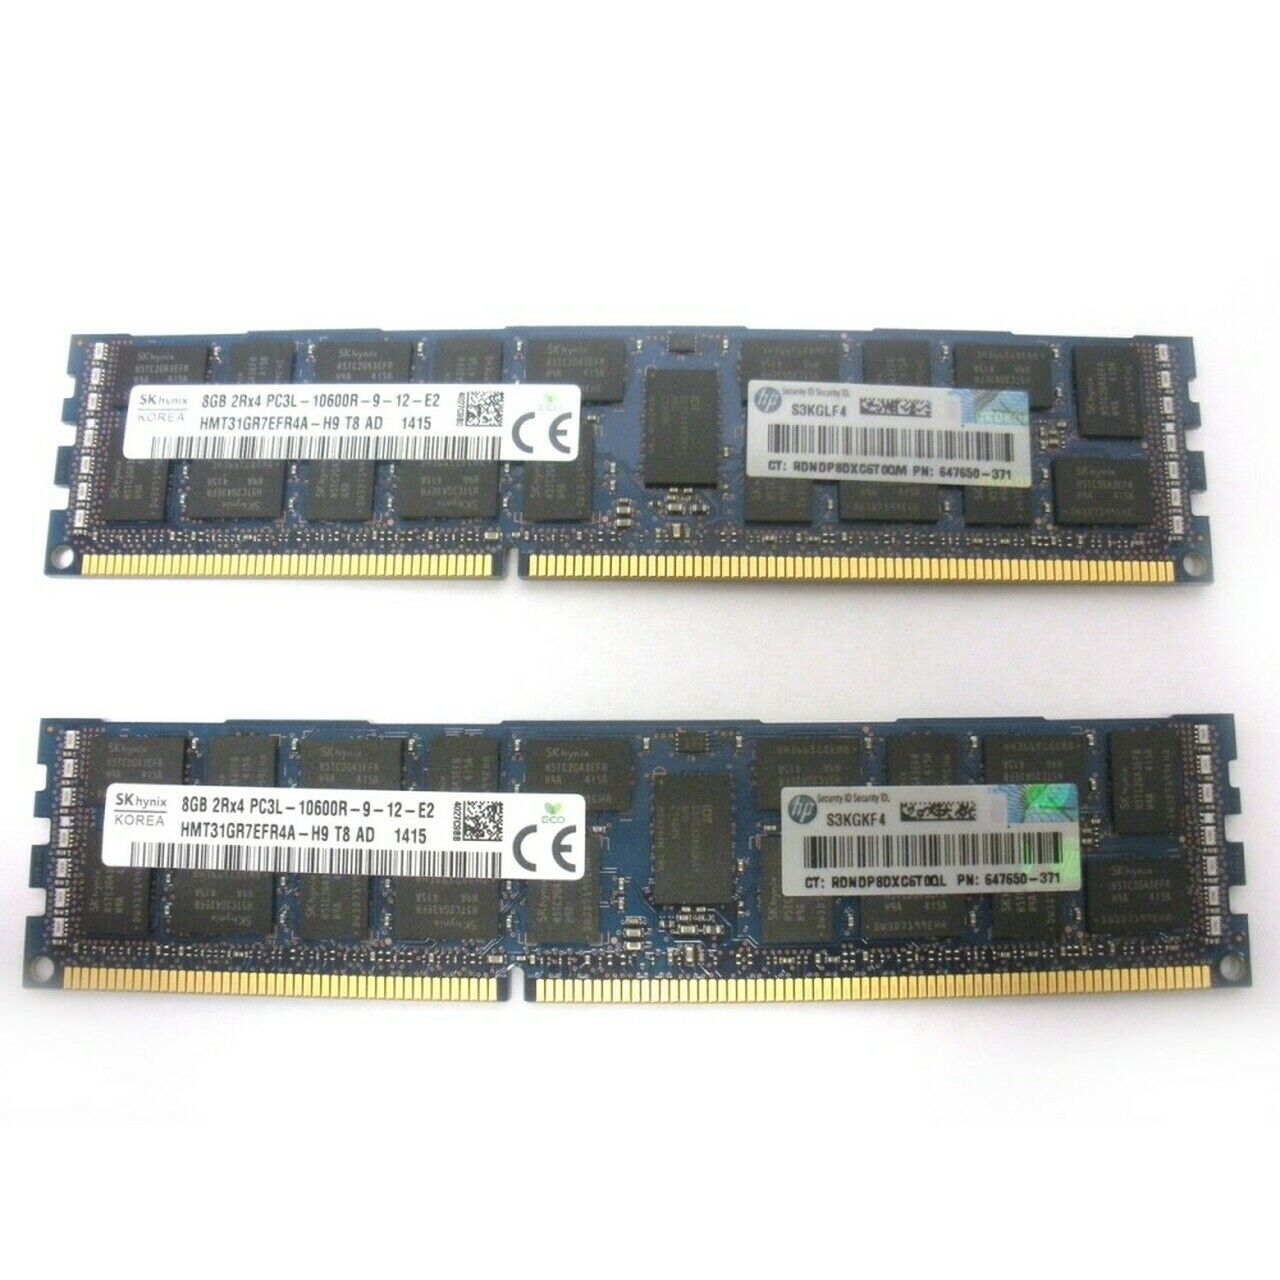 HP 16GB (2x 8GB) DDR3 2Rx4 PC3L-10600R Server Ram Memory Kit AM387A 647650-371